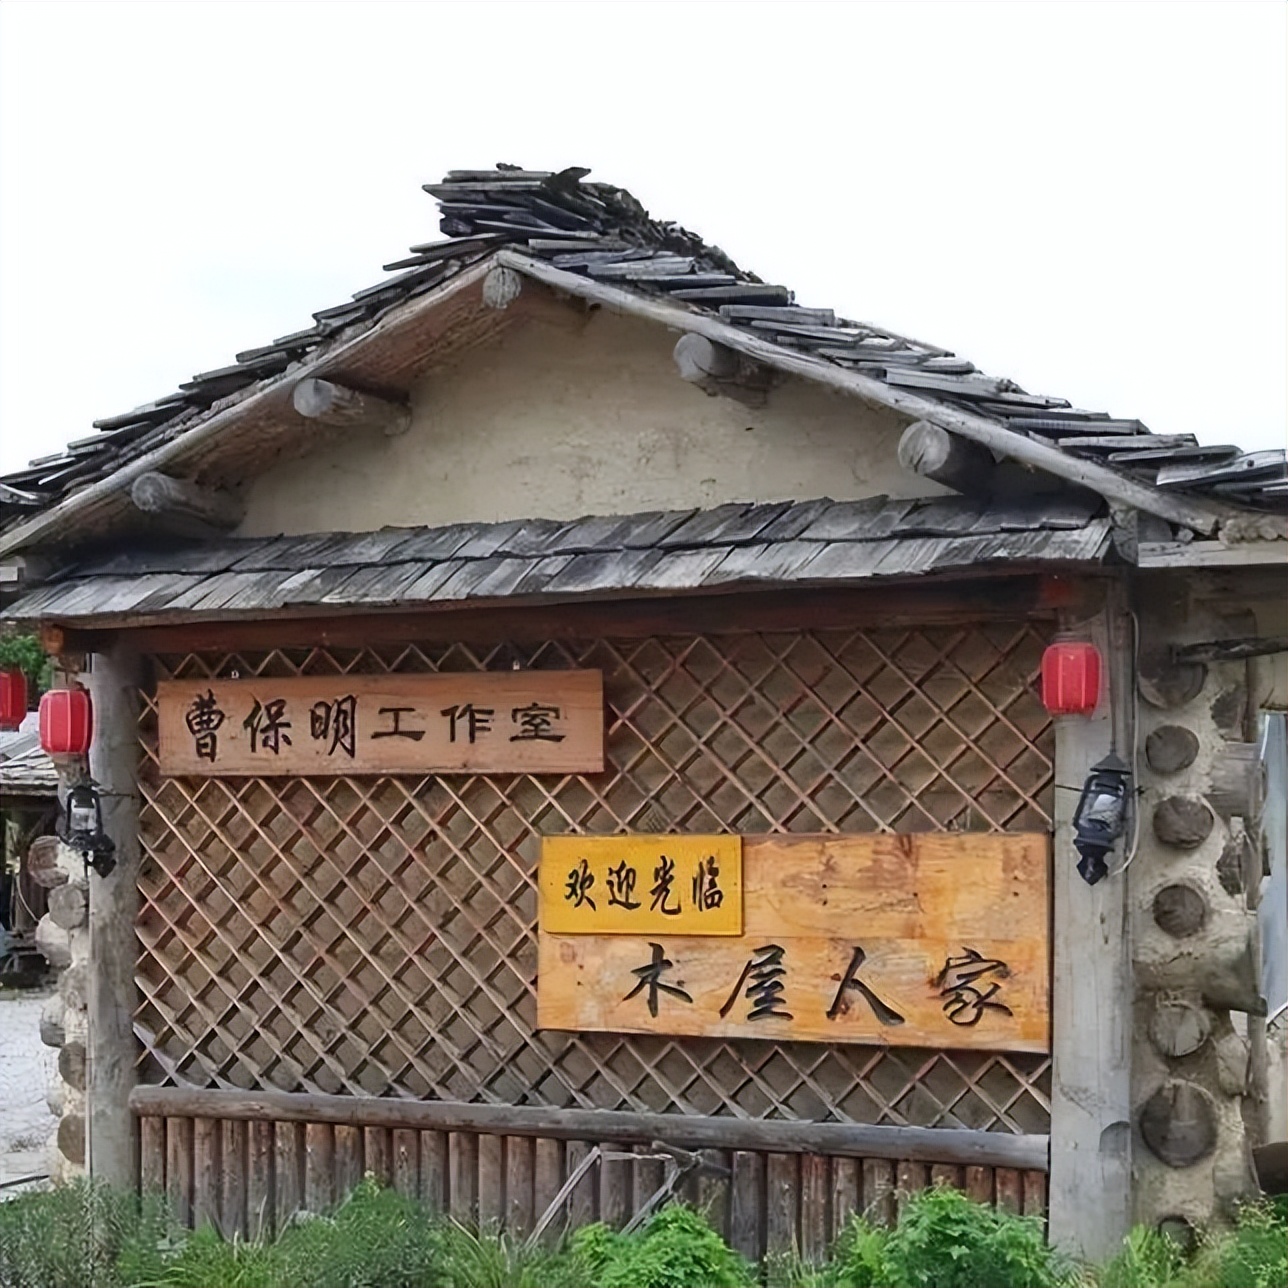 川湯温泉の仙人風呂を楽しむ人たち - 和歌山経済新聞